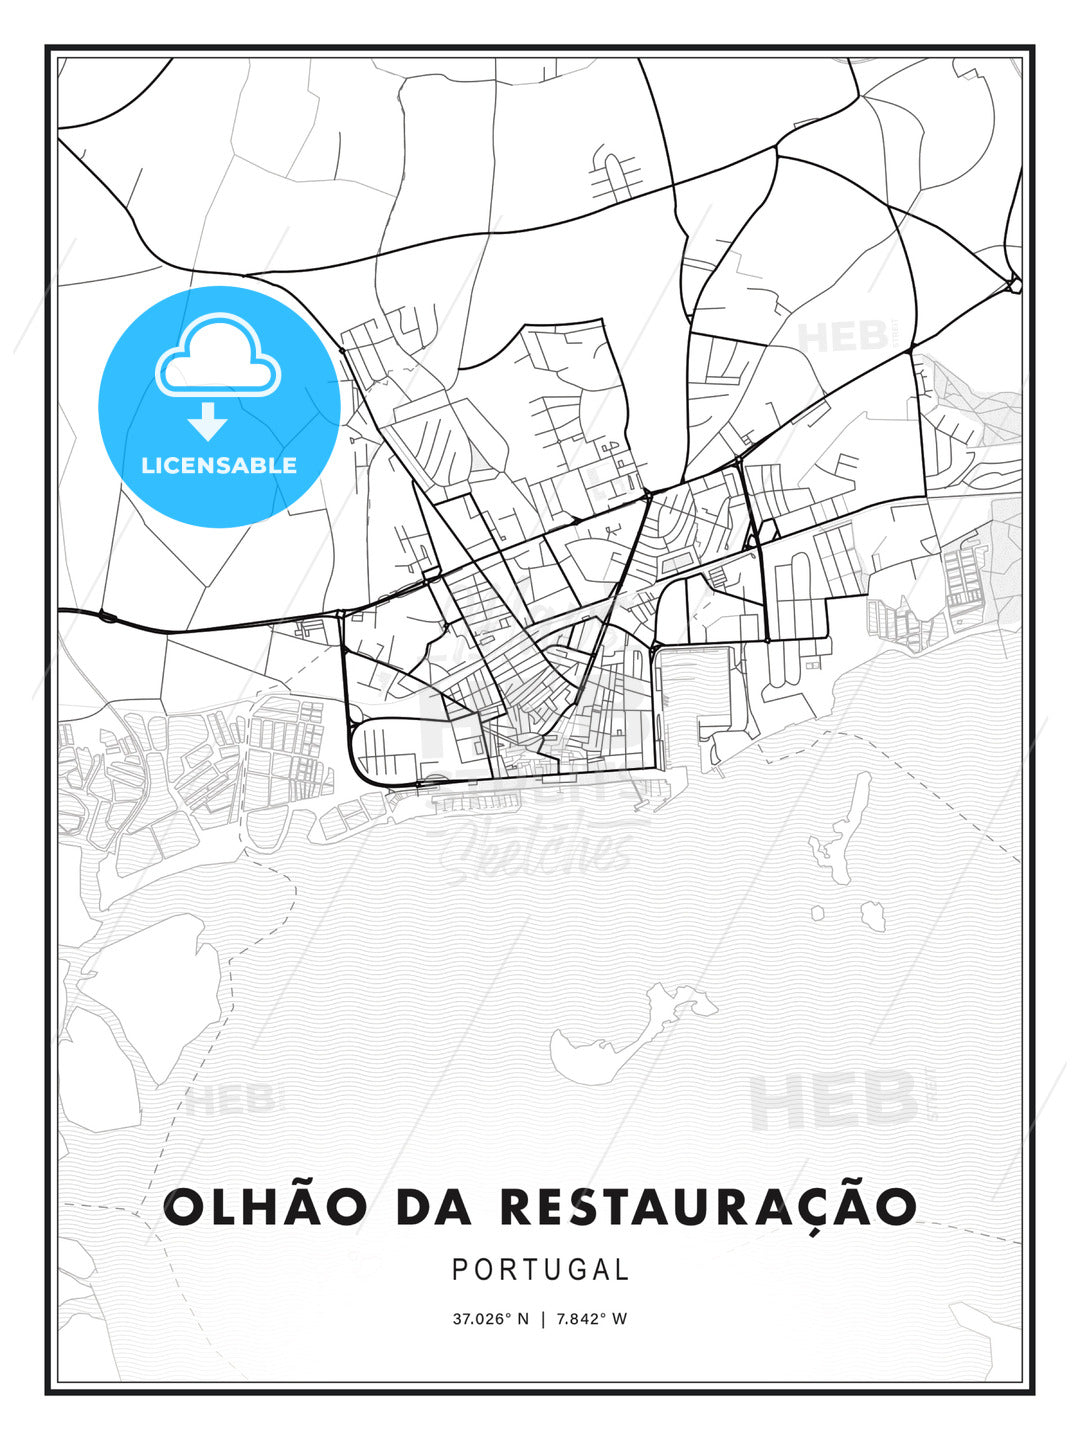 Olhão da Restauração, Portugal, Modern Print Template in Various Formats - HEBSTREITS Sketches